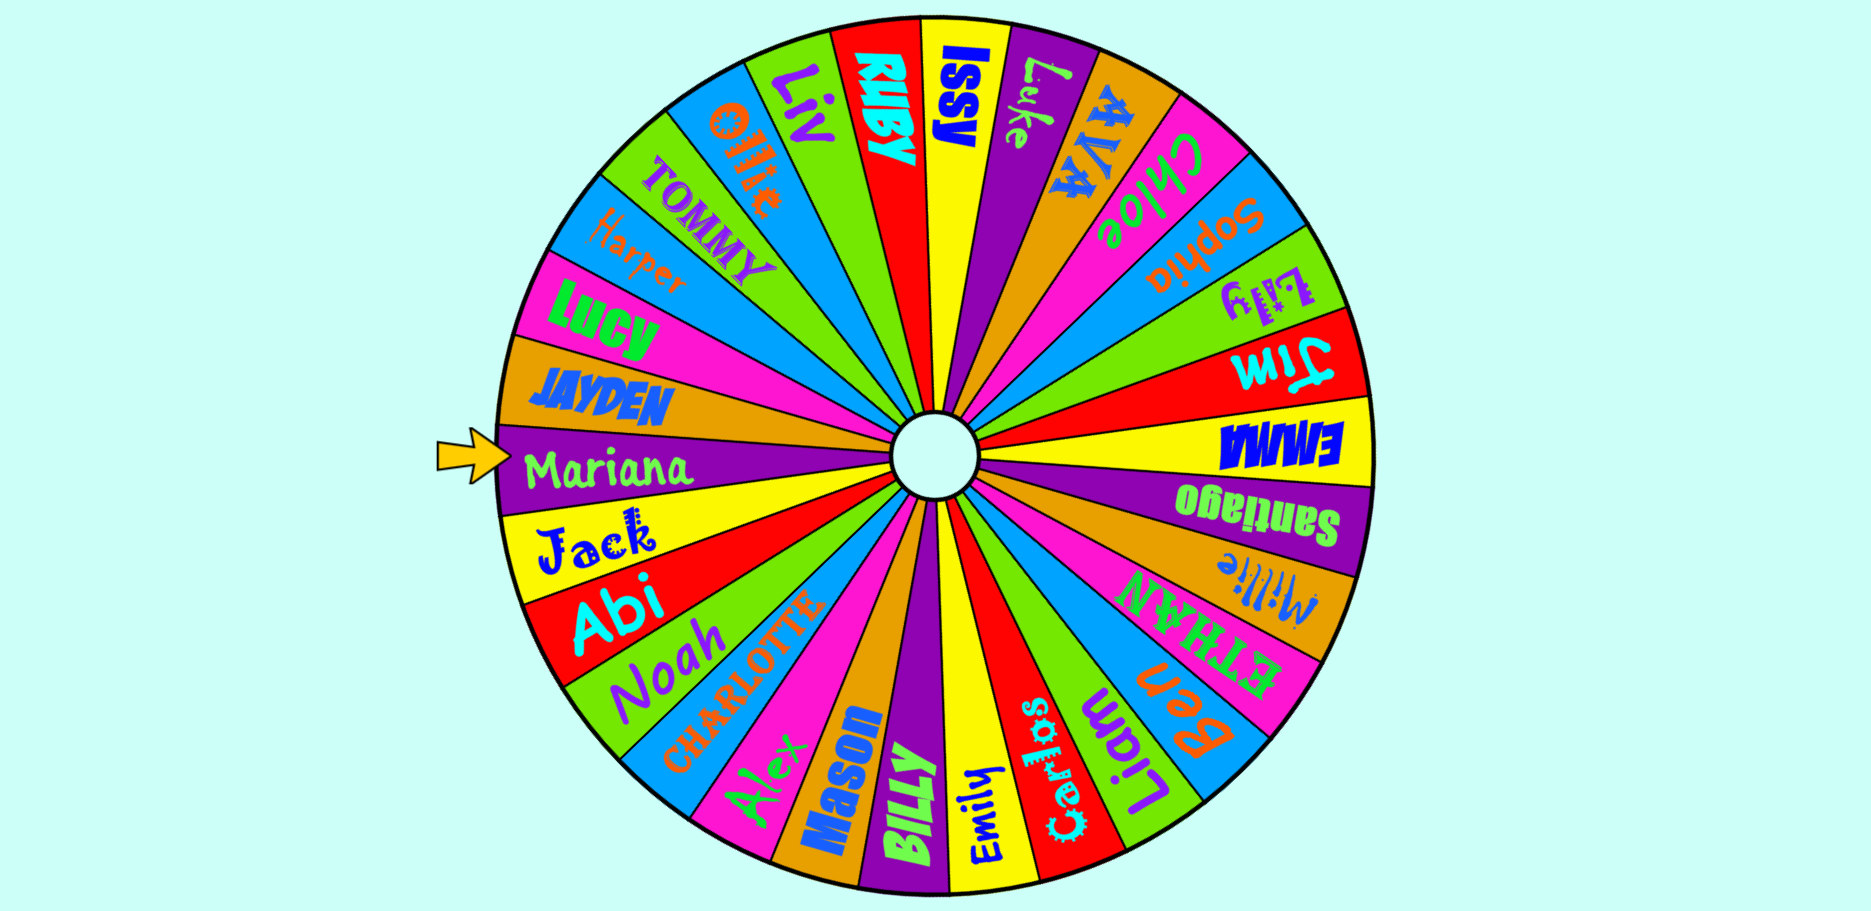 online random name picker wheel